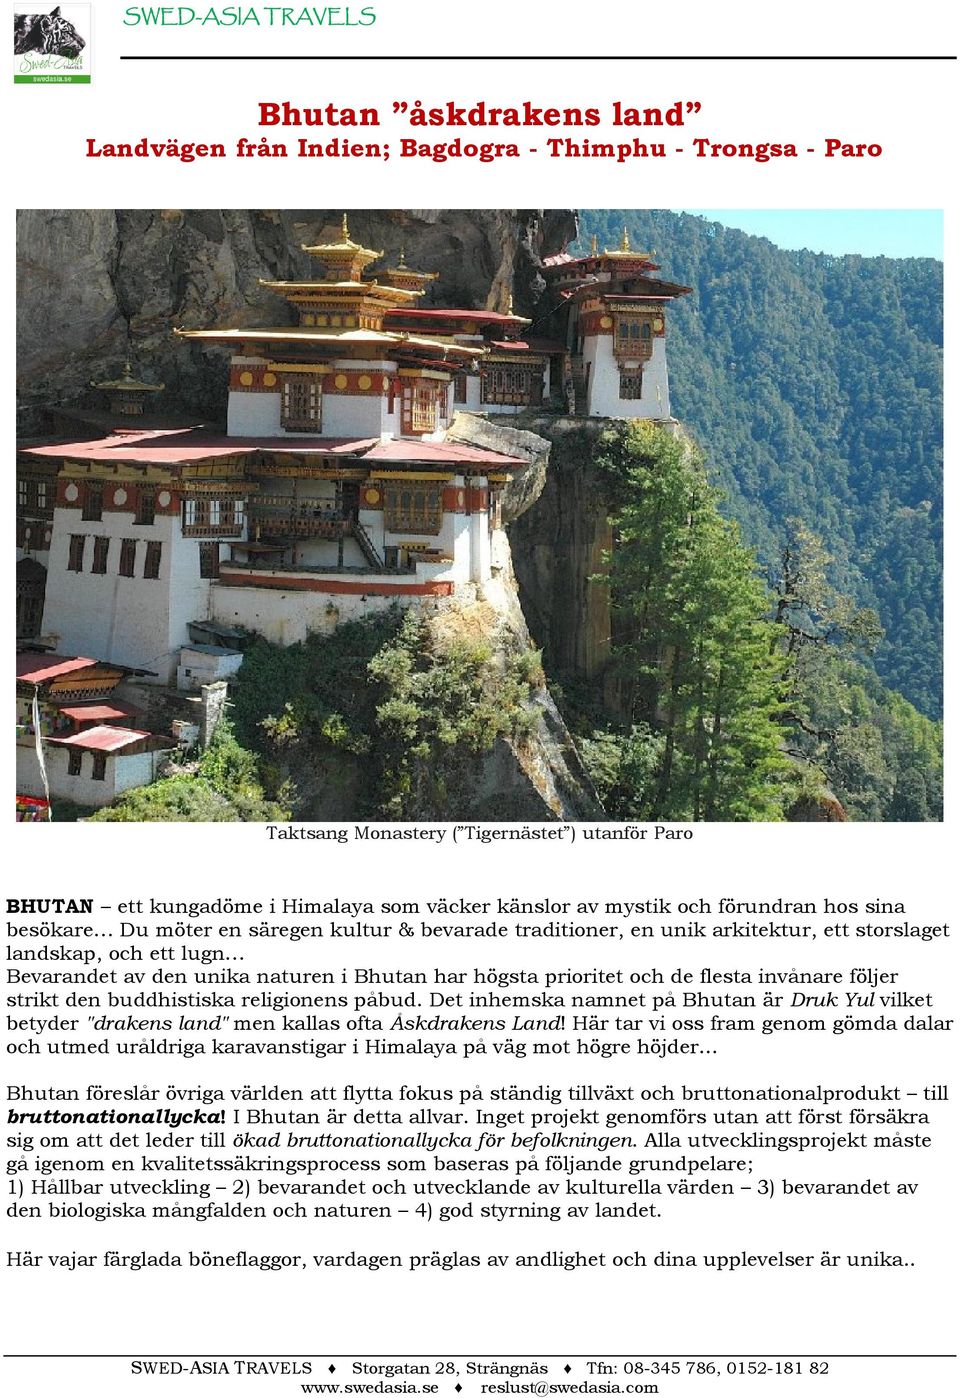 högsta prioritet och de flesta invånare följer strikt den buddhistiska religionens påbud. Det inhemska namnet på Bhutan är Druk Yul vilket betyder "drakens land" men kallas ofta Åskdrakens Land!